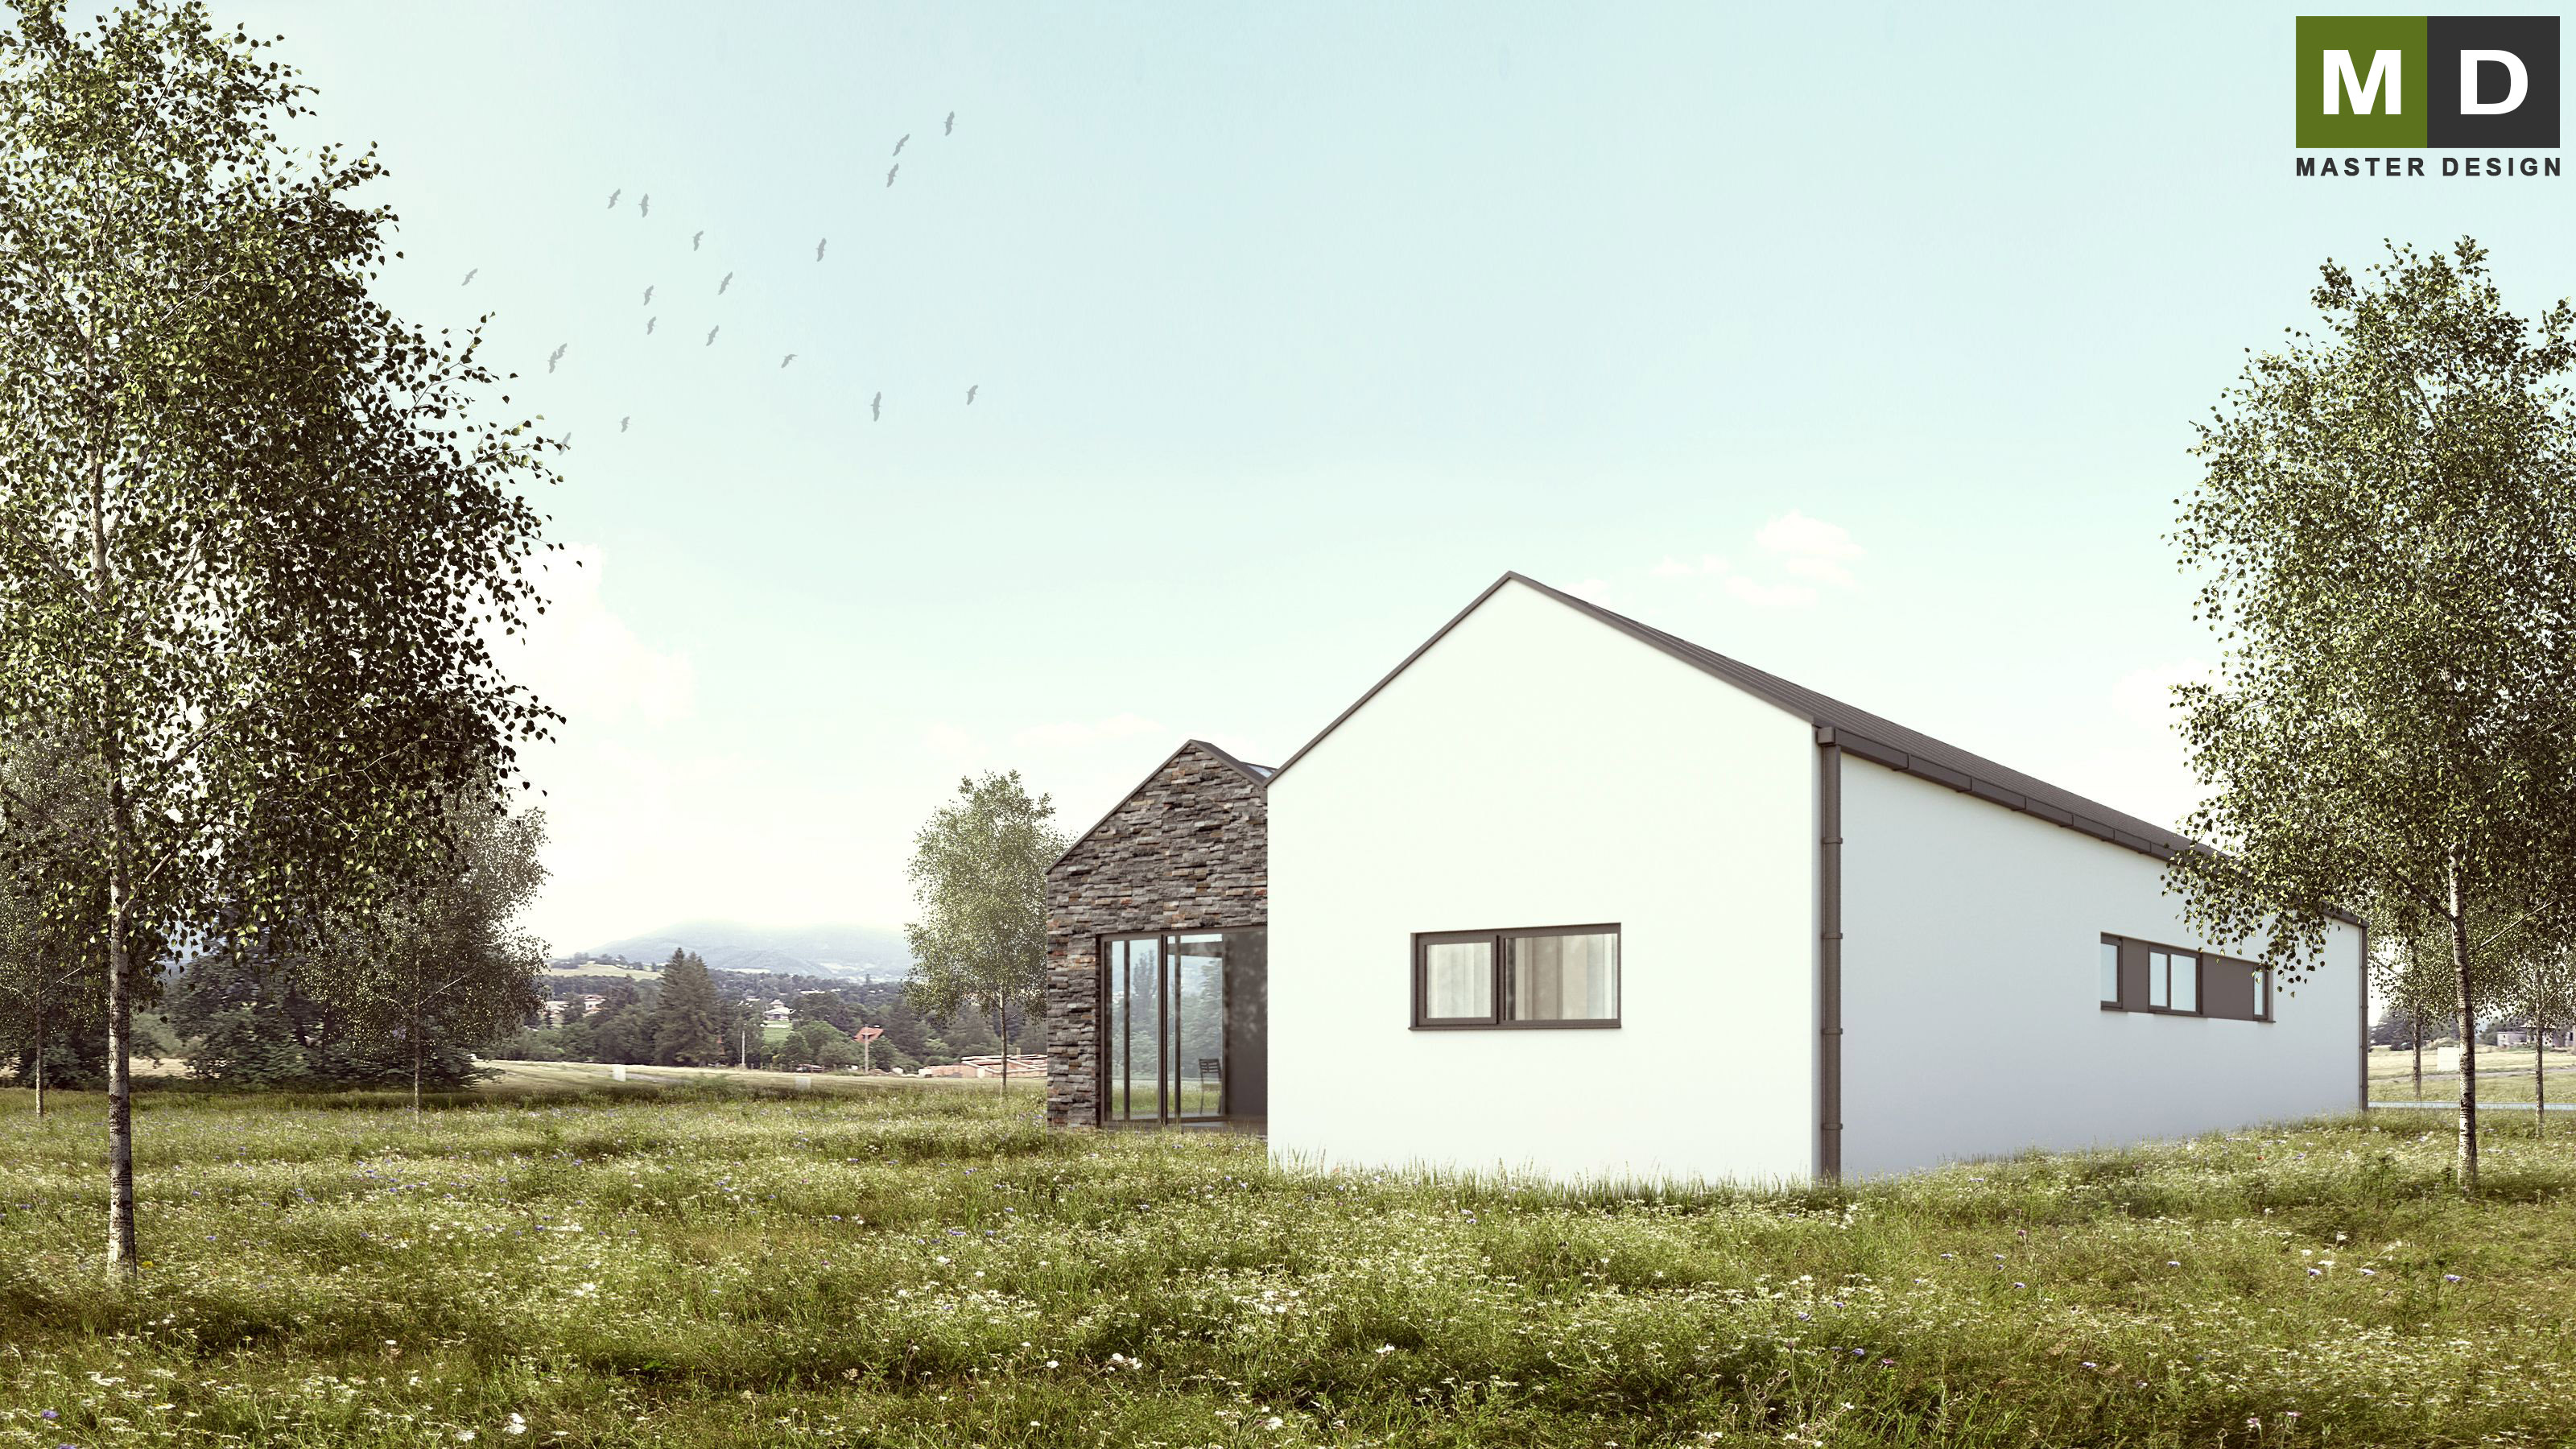 Vizualizace 3 - Ekonomický bungalov se sedlovými střechami a zimní zahradou - Tichá